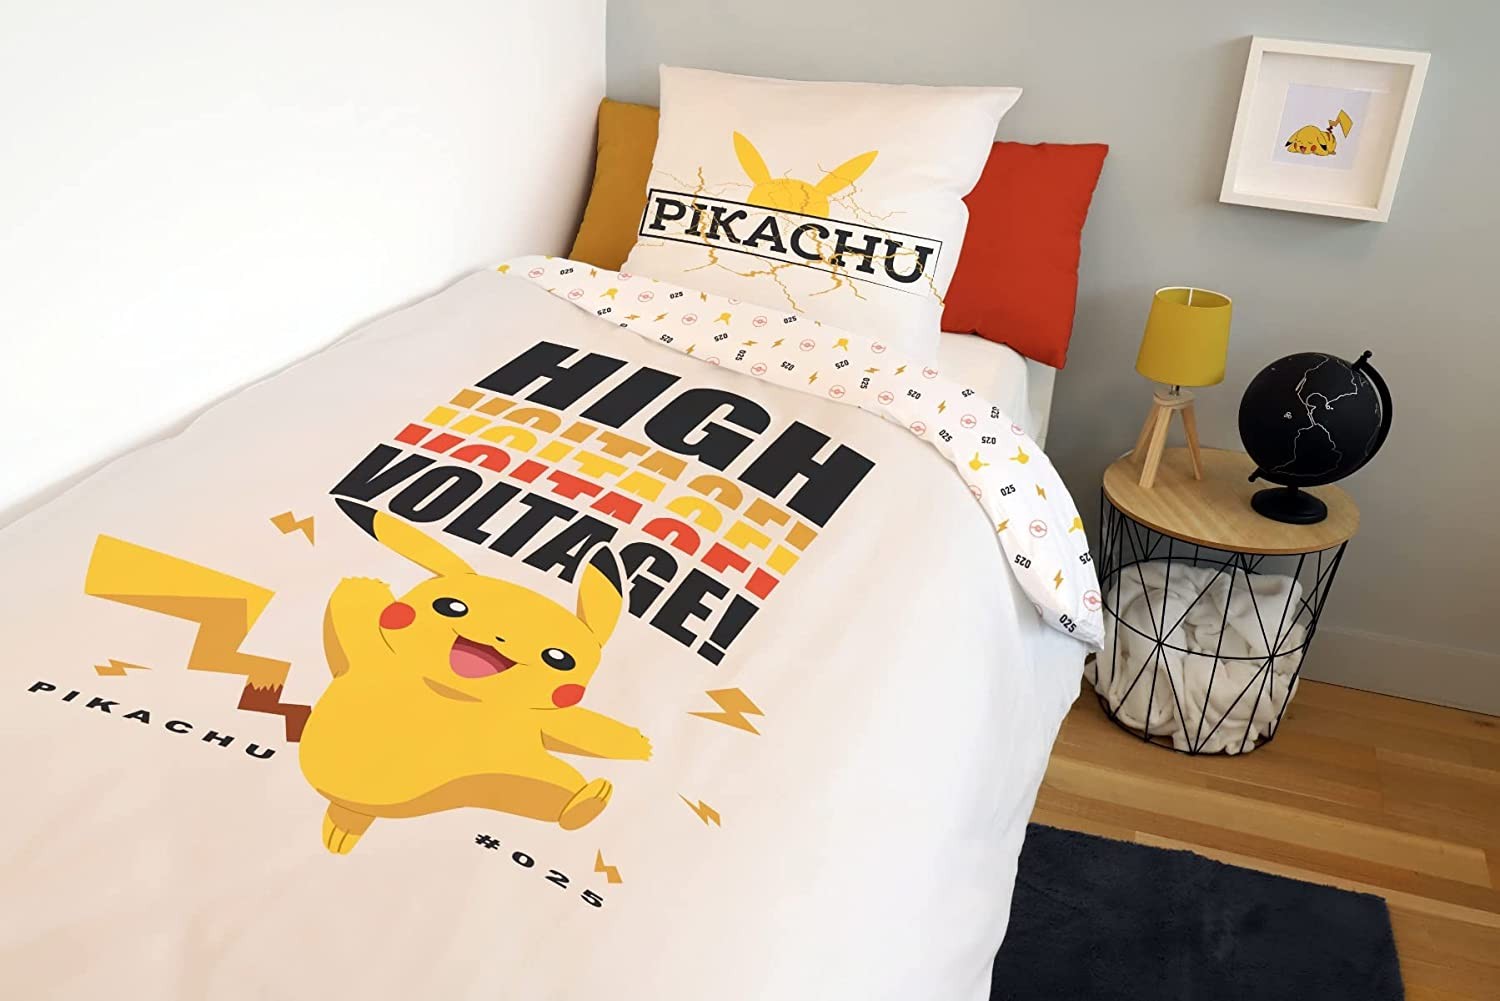 Parure de lit réversible et Taie D'oreiller - Pokemon - 140 cm x 200 cm